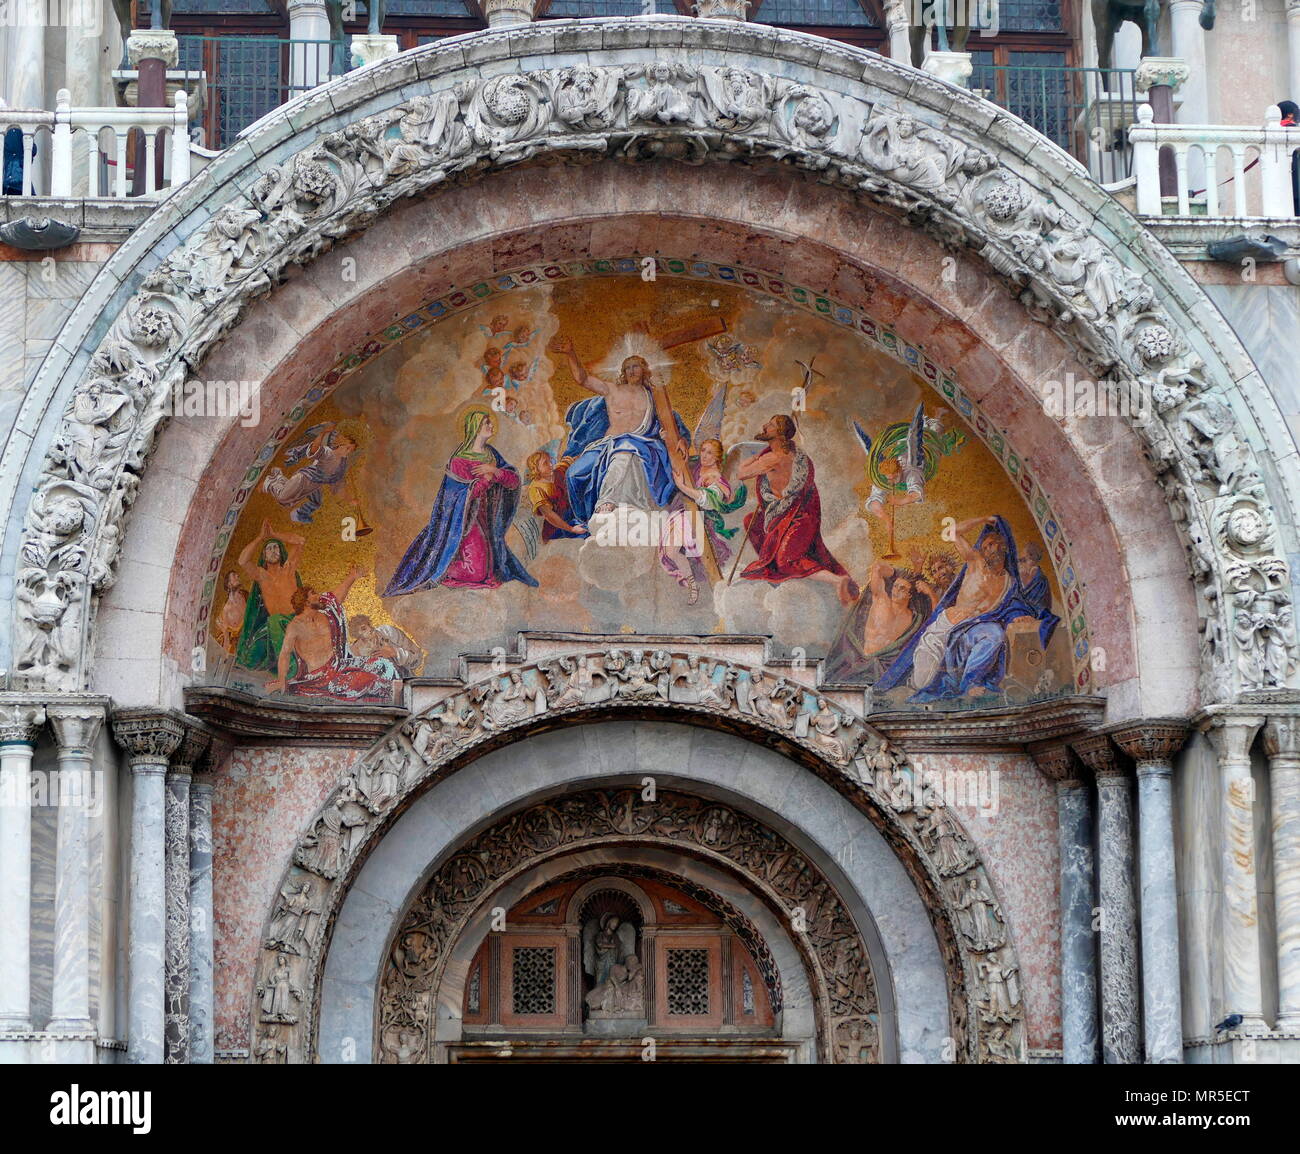 Mosaik Fresko über dem Portikus der Basilika di San Marco, den Dom Kirche der Römisch-katholischen Erzdiözese von Venedig, Norditalien. Es ist die berühmteste der Kirchen der Stadt und eines der bekanntesten Beispiele für Italo-Byzantine Architektur. Stockfoto